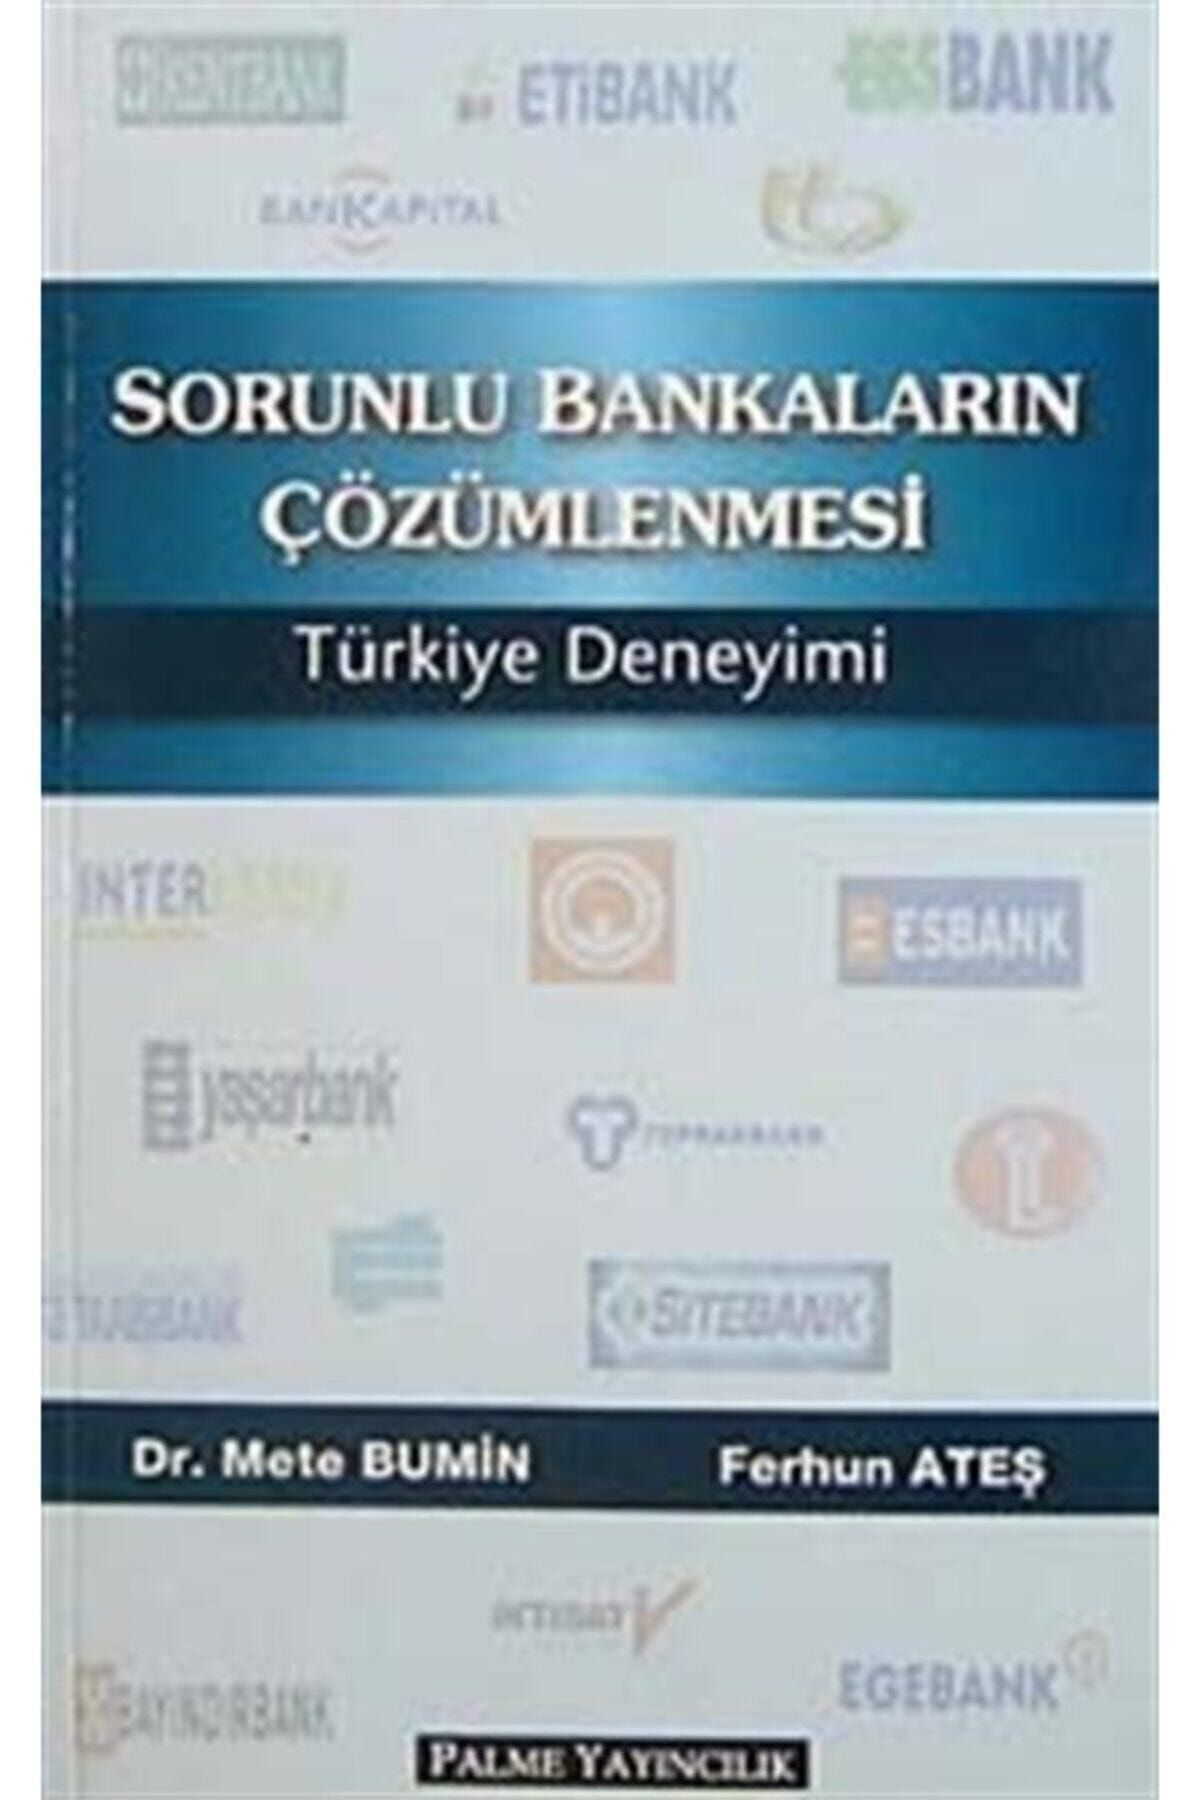 Palme Yayınevi Sorunlu Bankaların Çözümlenmesi Türkiye Deneyimi